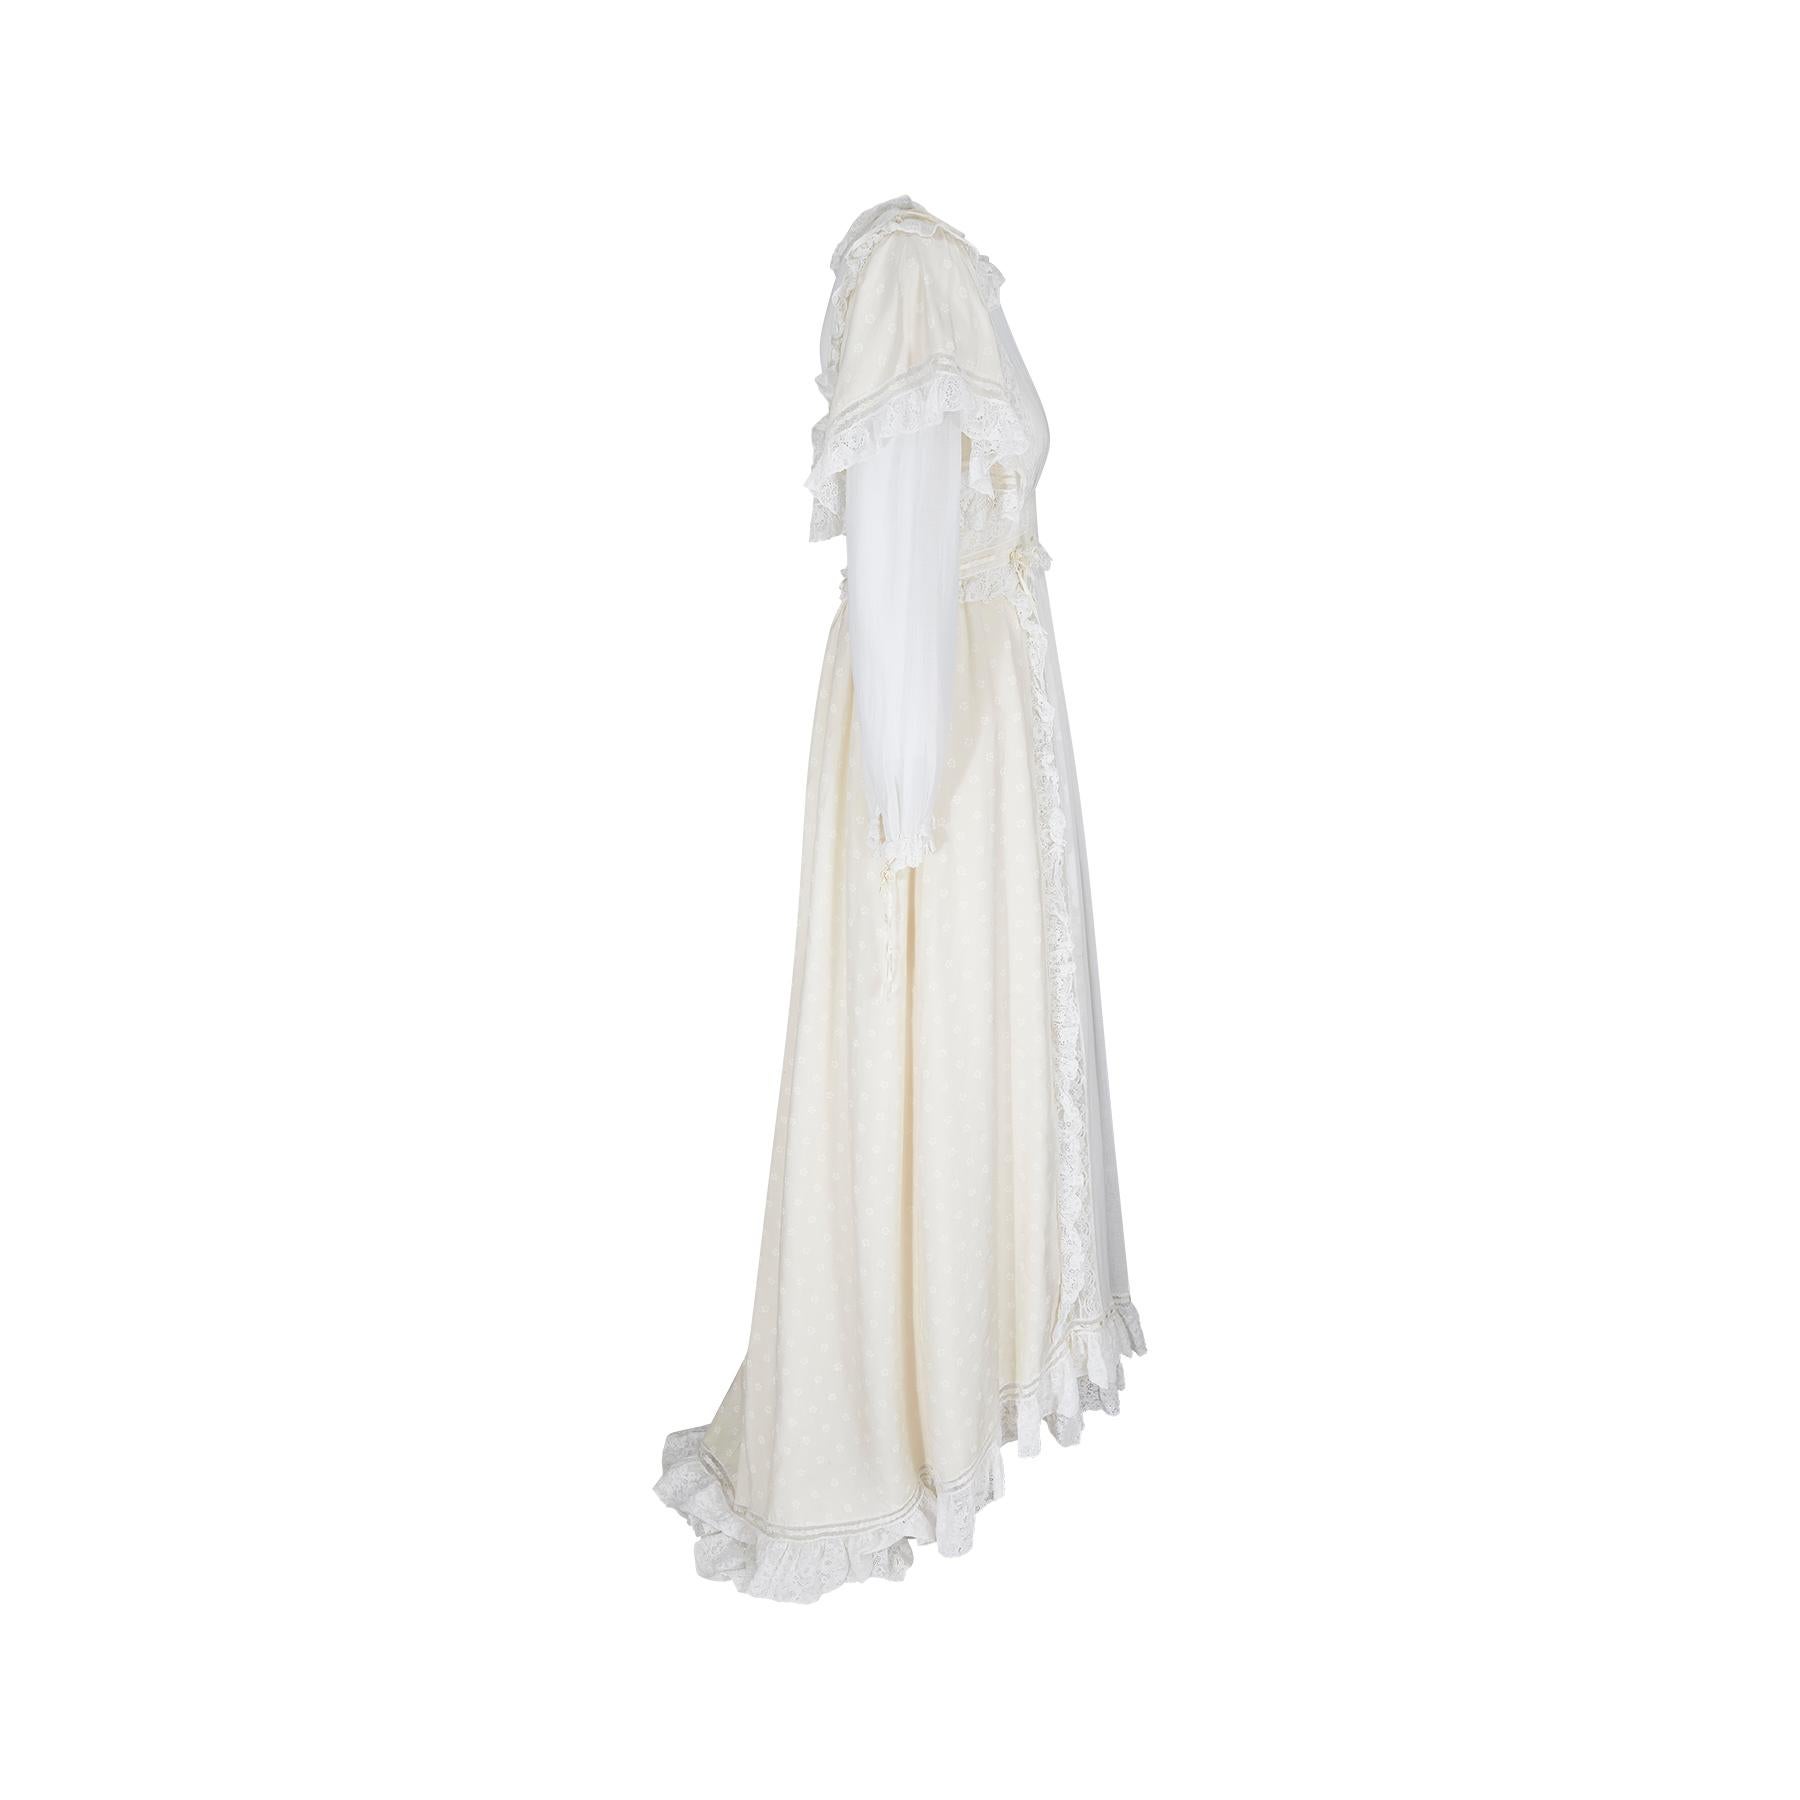 Ein feines und seltenes Kleid aus cremefarbener Seide und Baumwollmousseline von Gina Fratini aus den 1970er Jahren, das die Bohème-Ästhetik sehr gut verkörpert und mit ziemlicher Sicherheit als Hochzeitskleid oder für ein ganz besonderes Ereignis